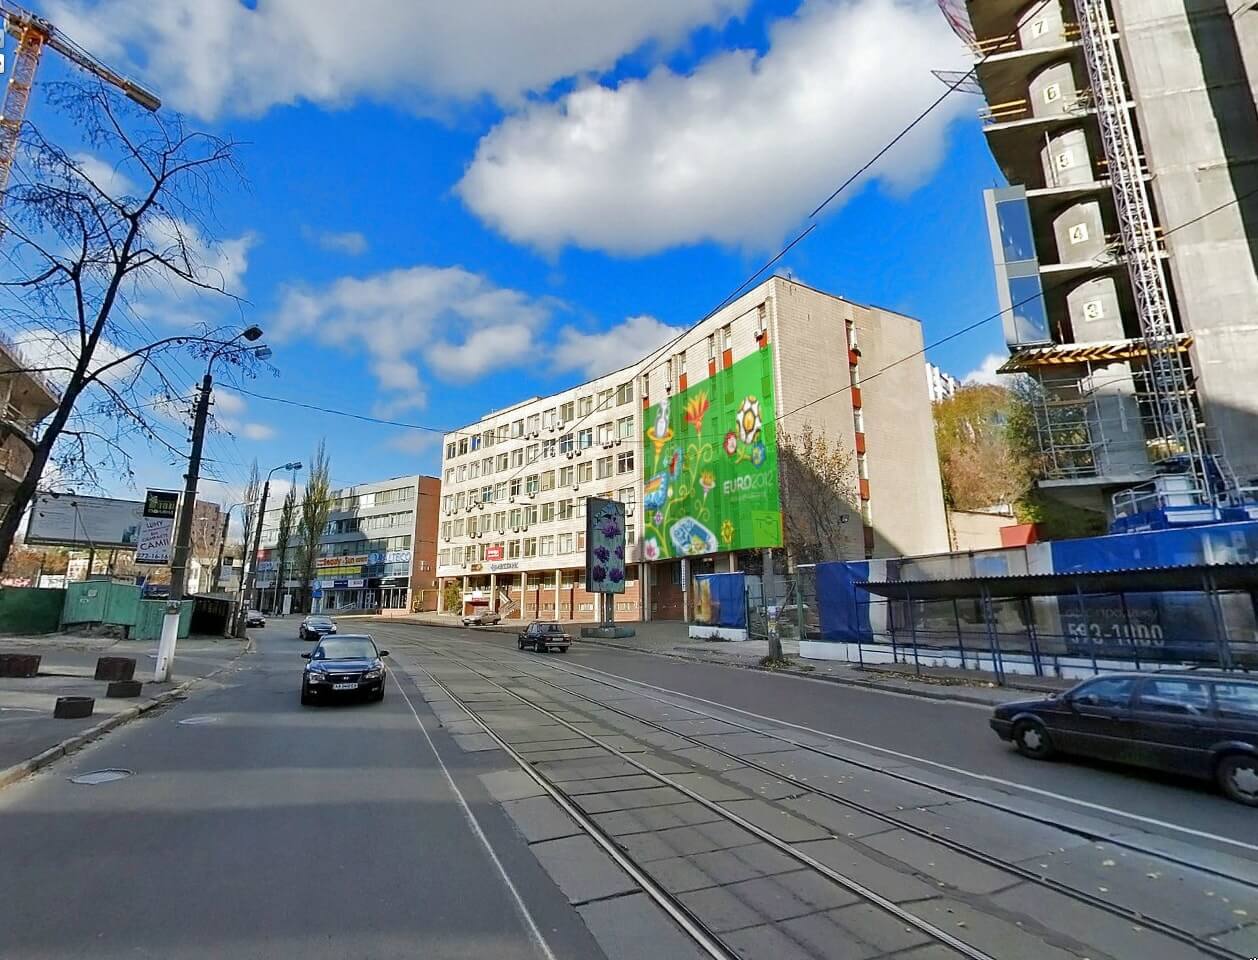 Glubochitska Street